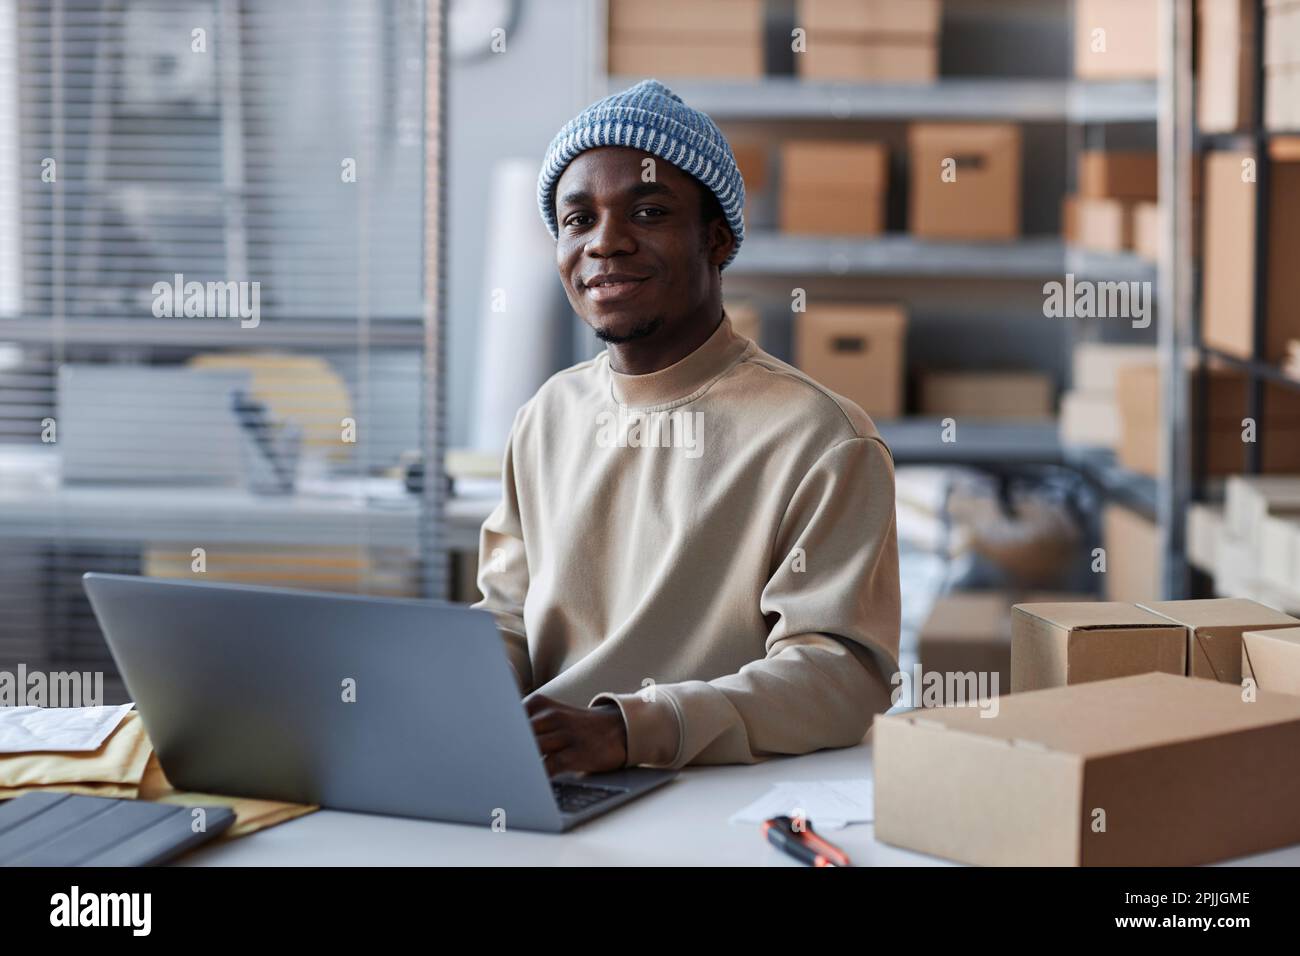 Junger afroamerikanischer Manager mit Laptop, der auf die Kamera schaut, während er am Arbeitsplatz sitzt und neue Bestellungen von Online-Kunden annimmt Stockfoto